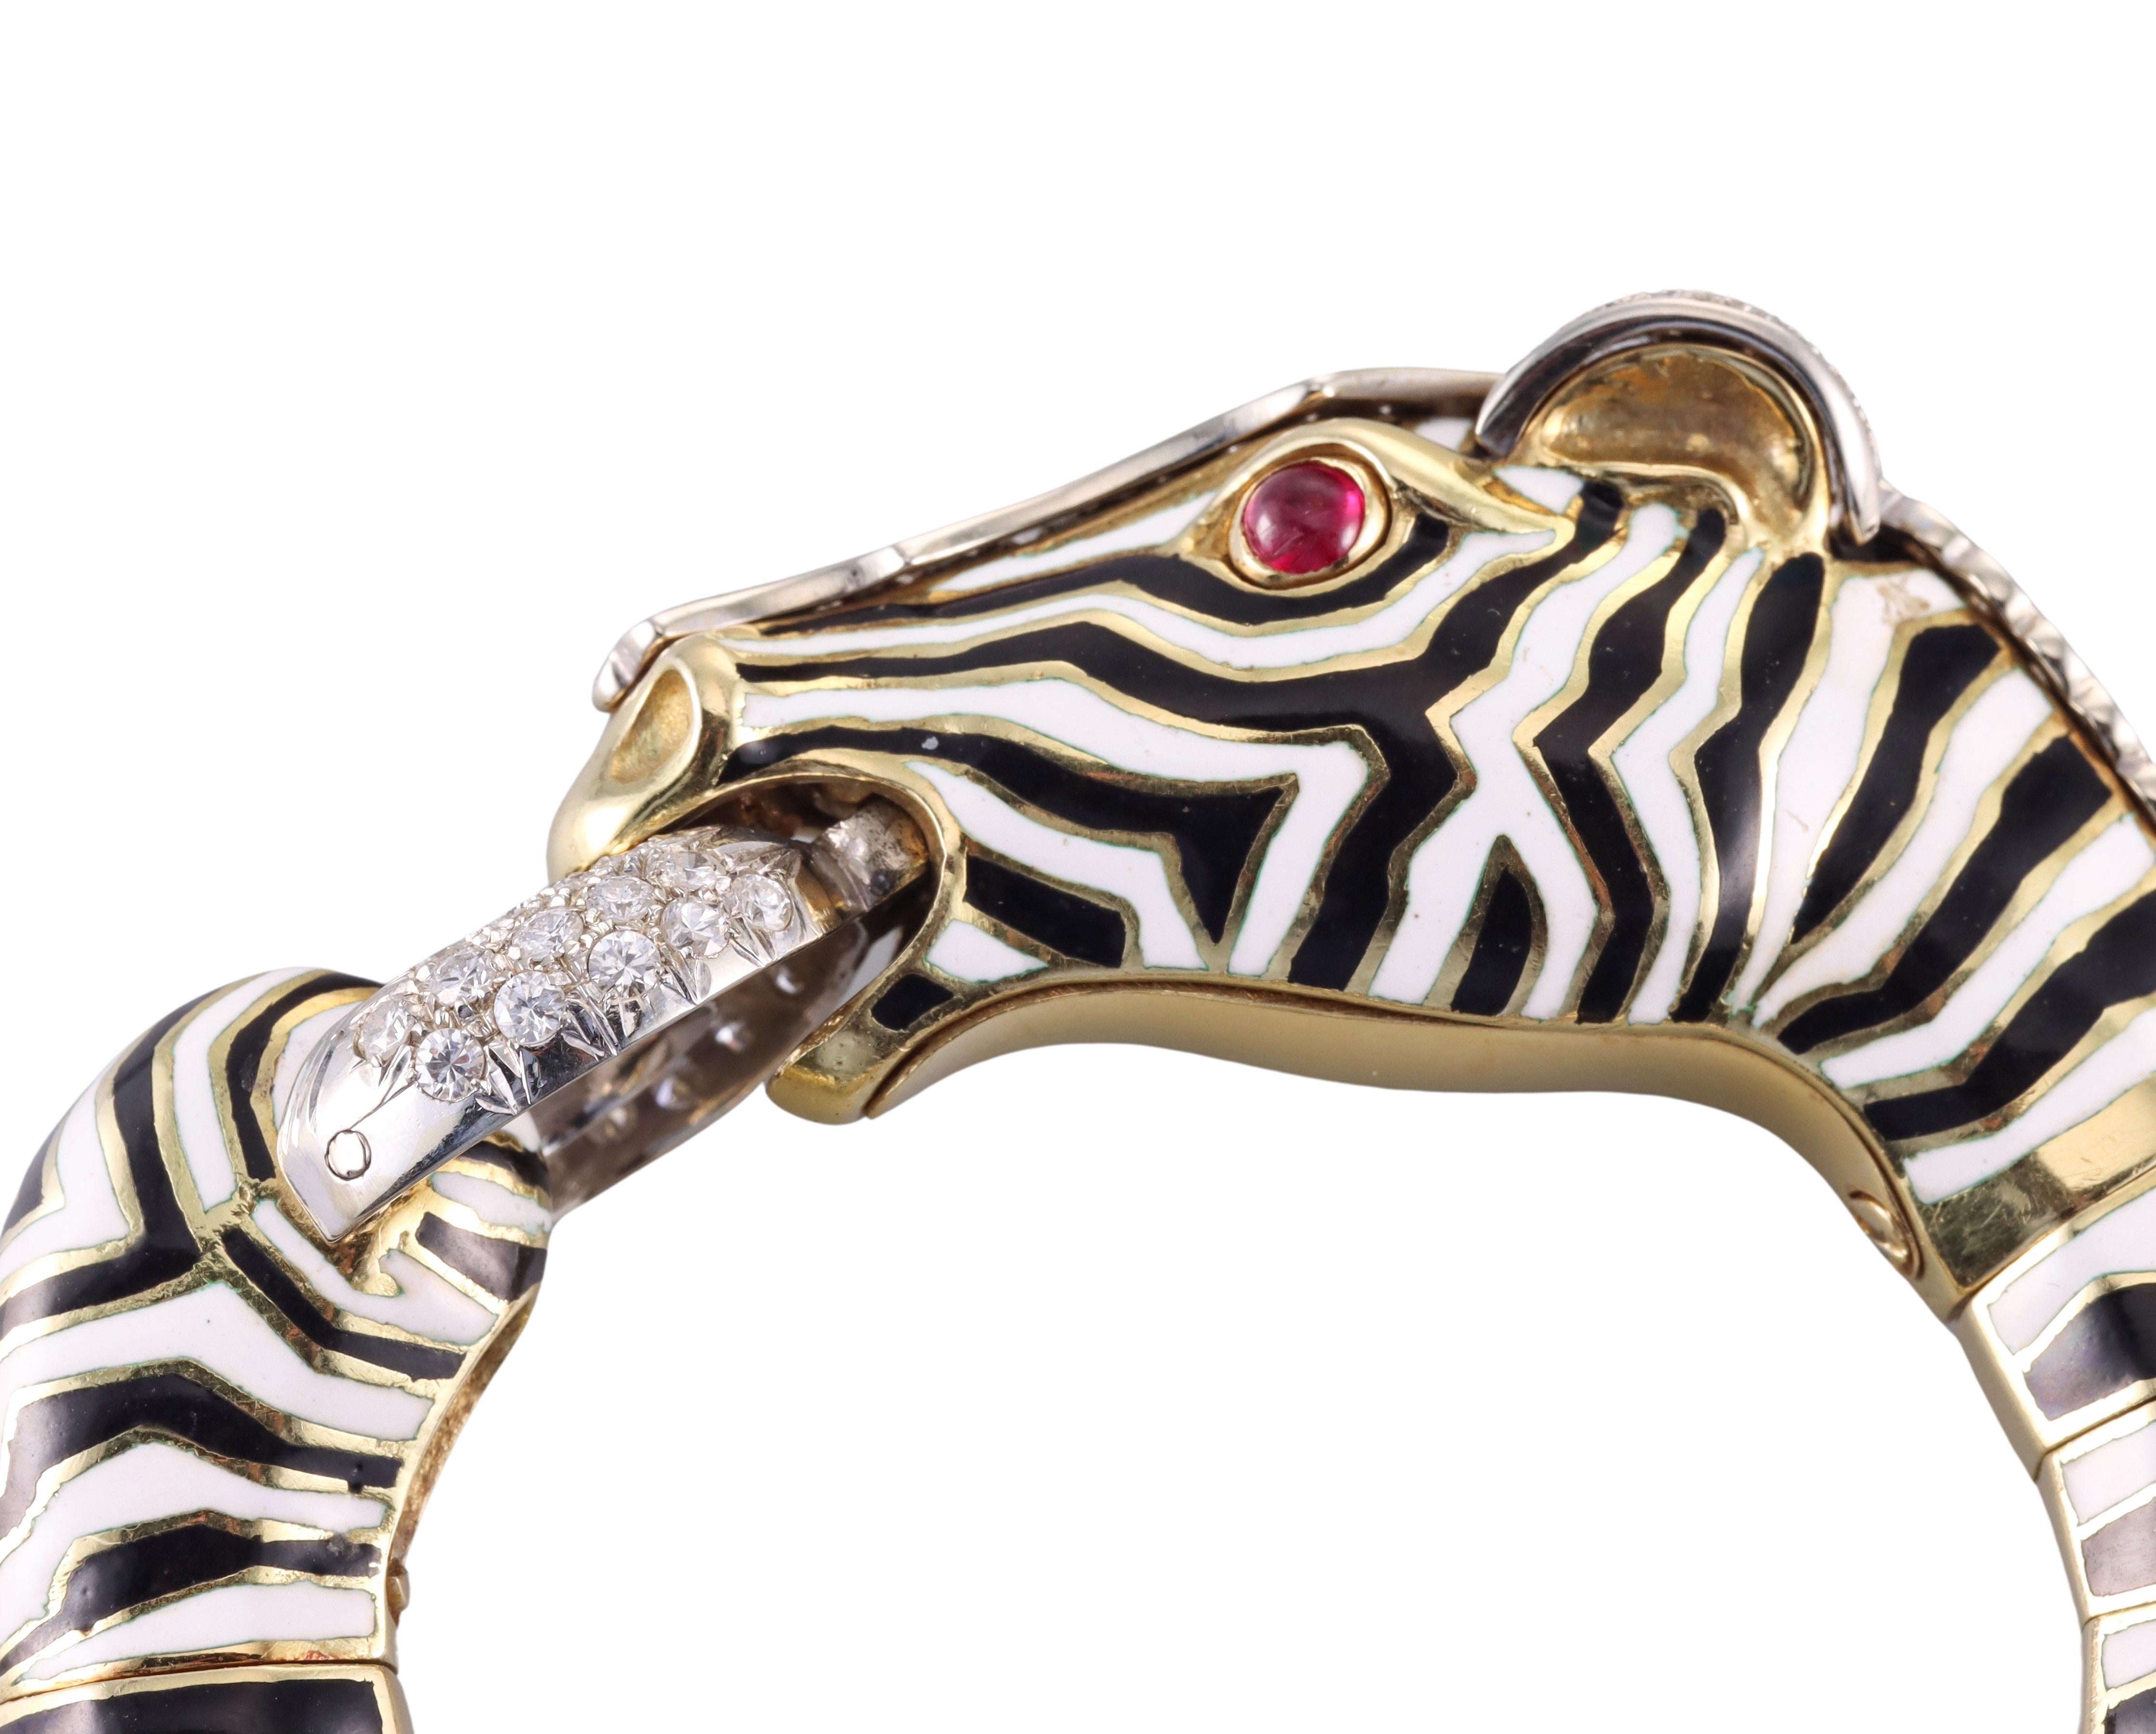 Beeindruckendes Frascarolo Zebra-Armband aus 18 Karat Gold, verziert mit Emaille, Rubin-Cabochon-Augen und ca. 1,30ctw H/VS-Diamanten. Das Armband passt an ein ca. 7